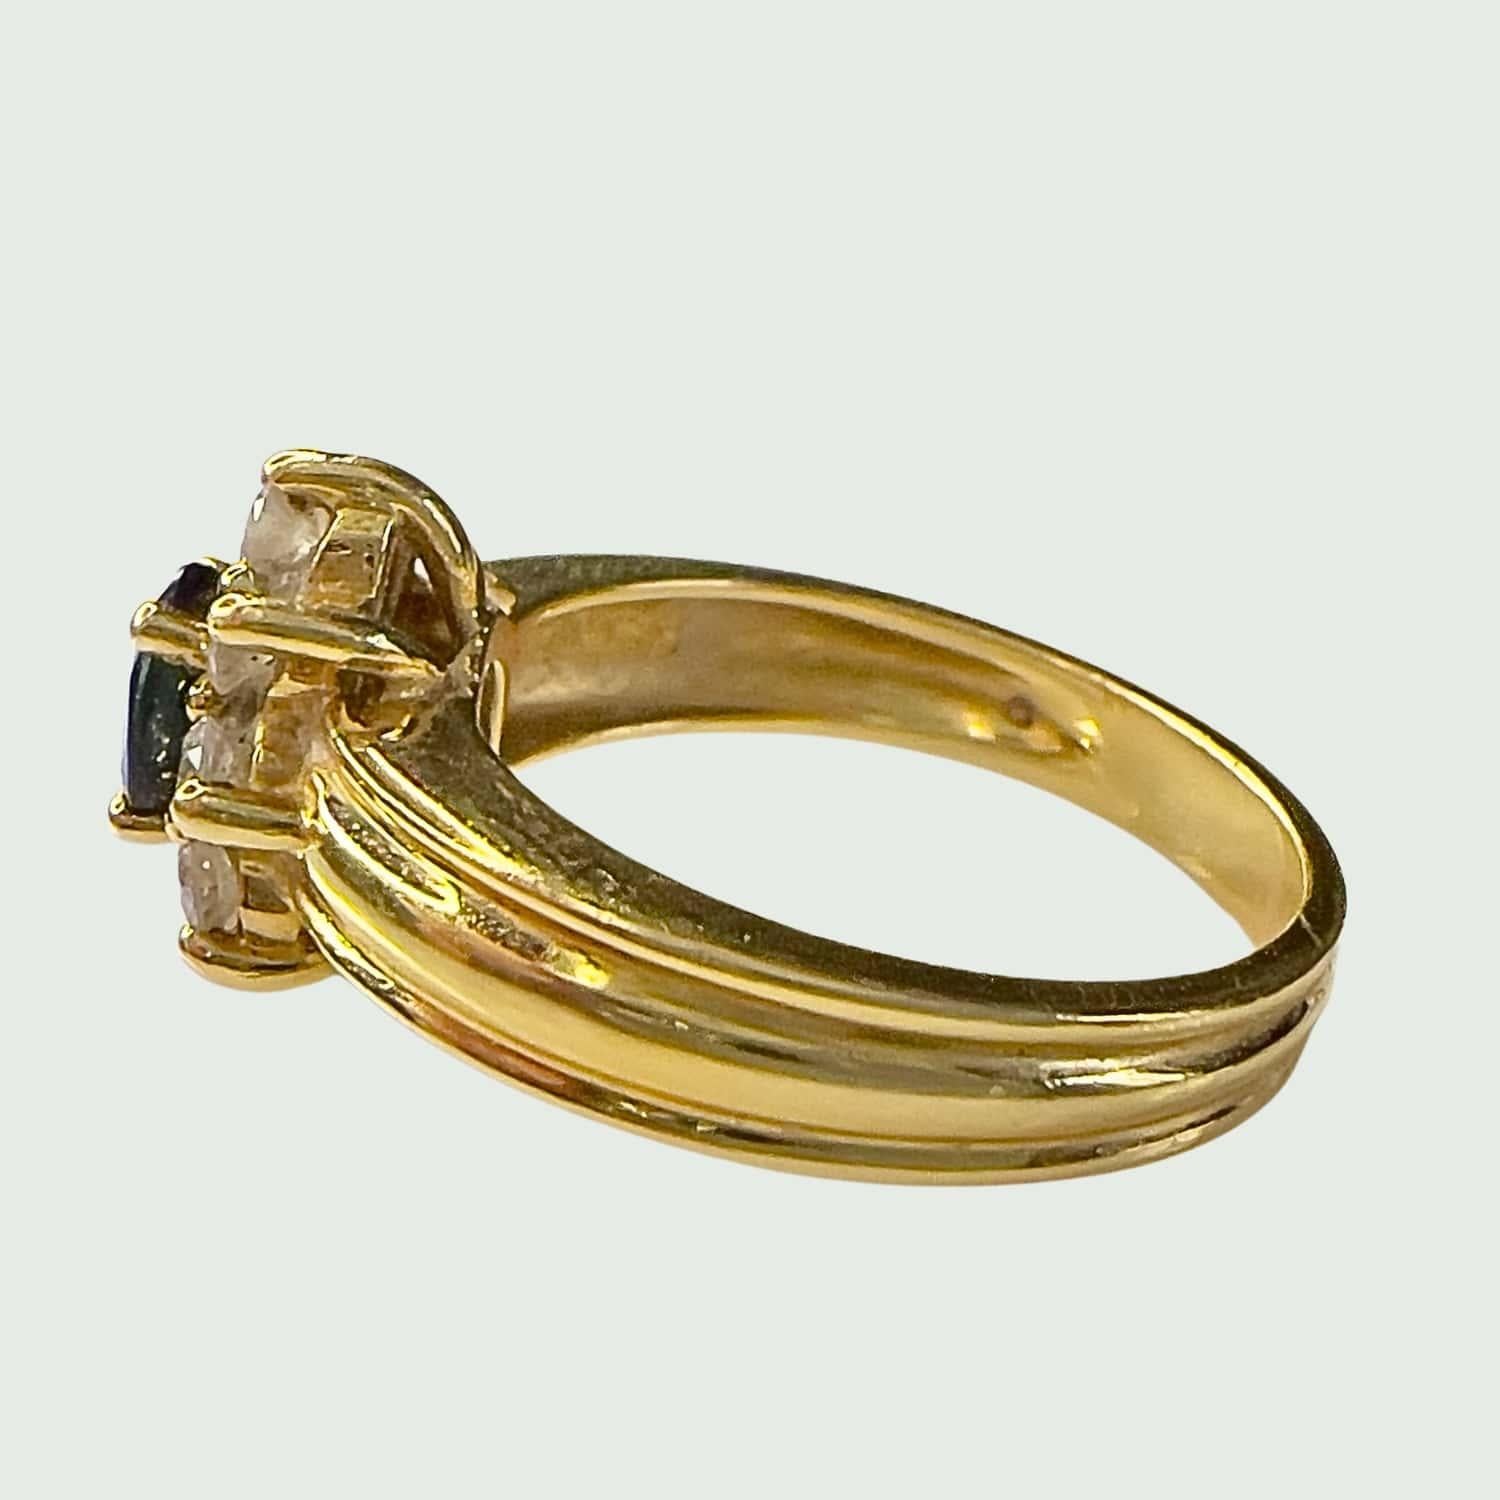 Erleben Sie die zeitgenössische Eleganz dieses Rings aus dem 20. Jahrhundert, der aus 18 Karat Gelbgold gefertigt ist und Diamanten im Brillantschliff von insgesamt 0,35 Karat sowie einen Saphir im Ovalschliff präsentiert. Mit einem Gewicht von 5,73